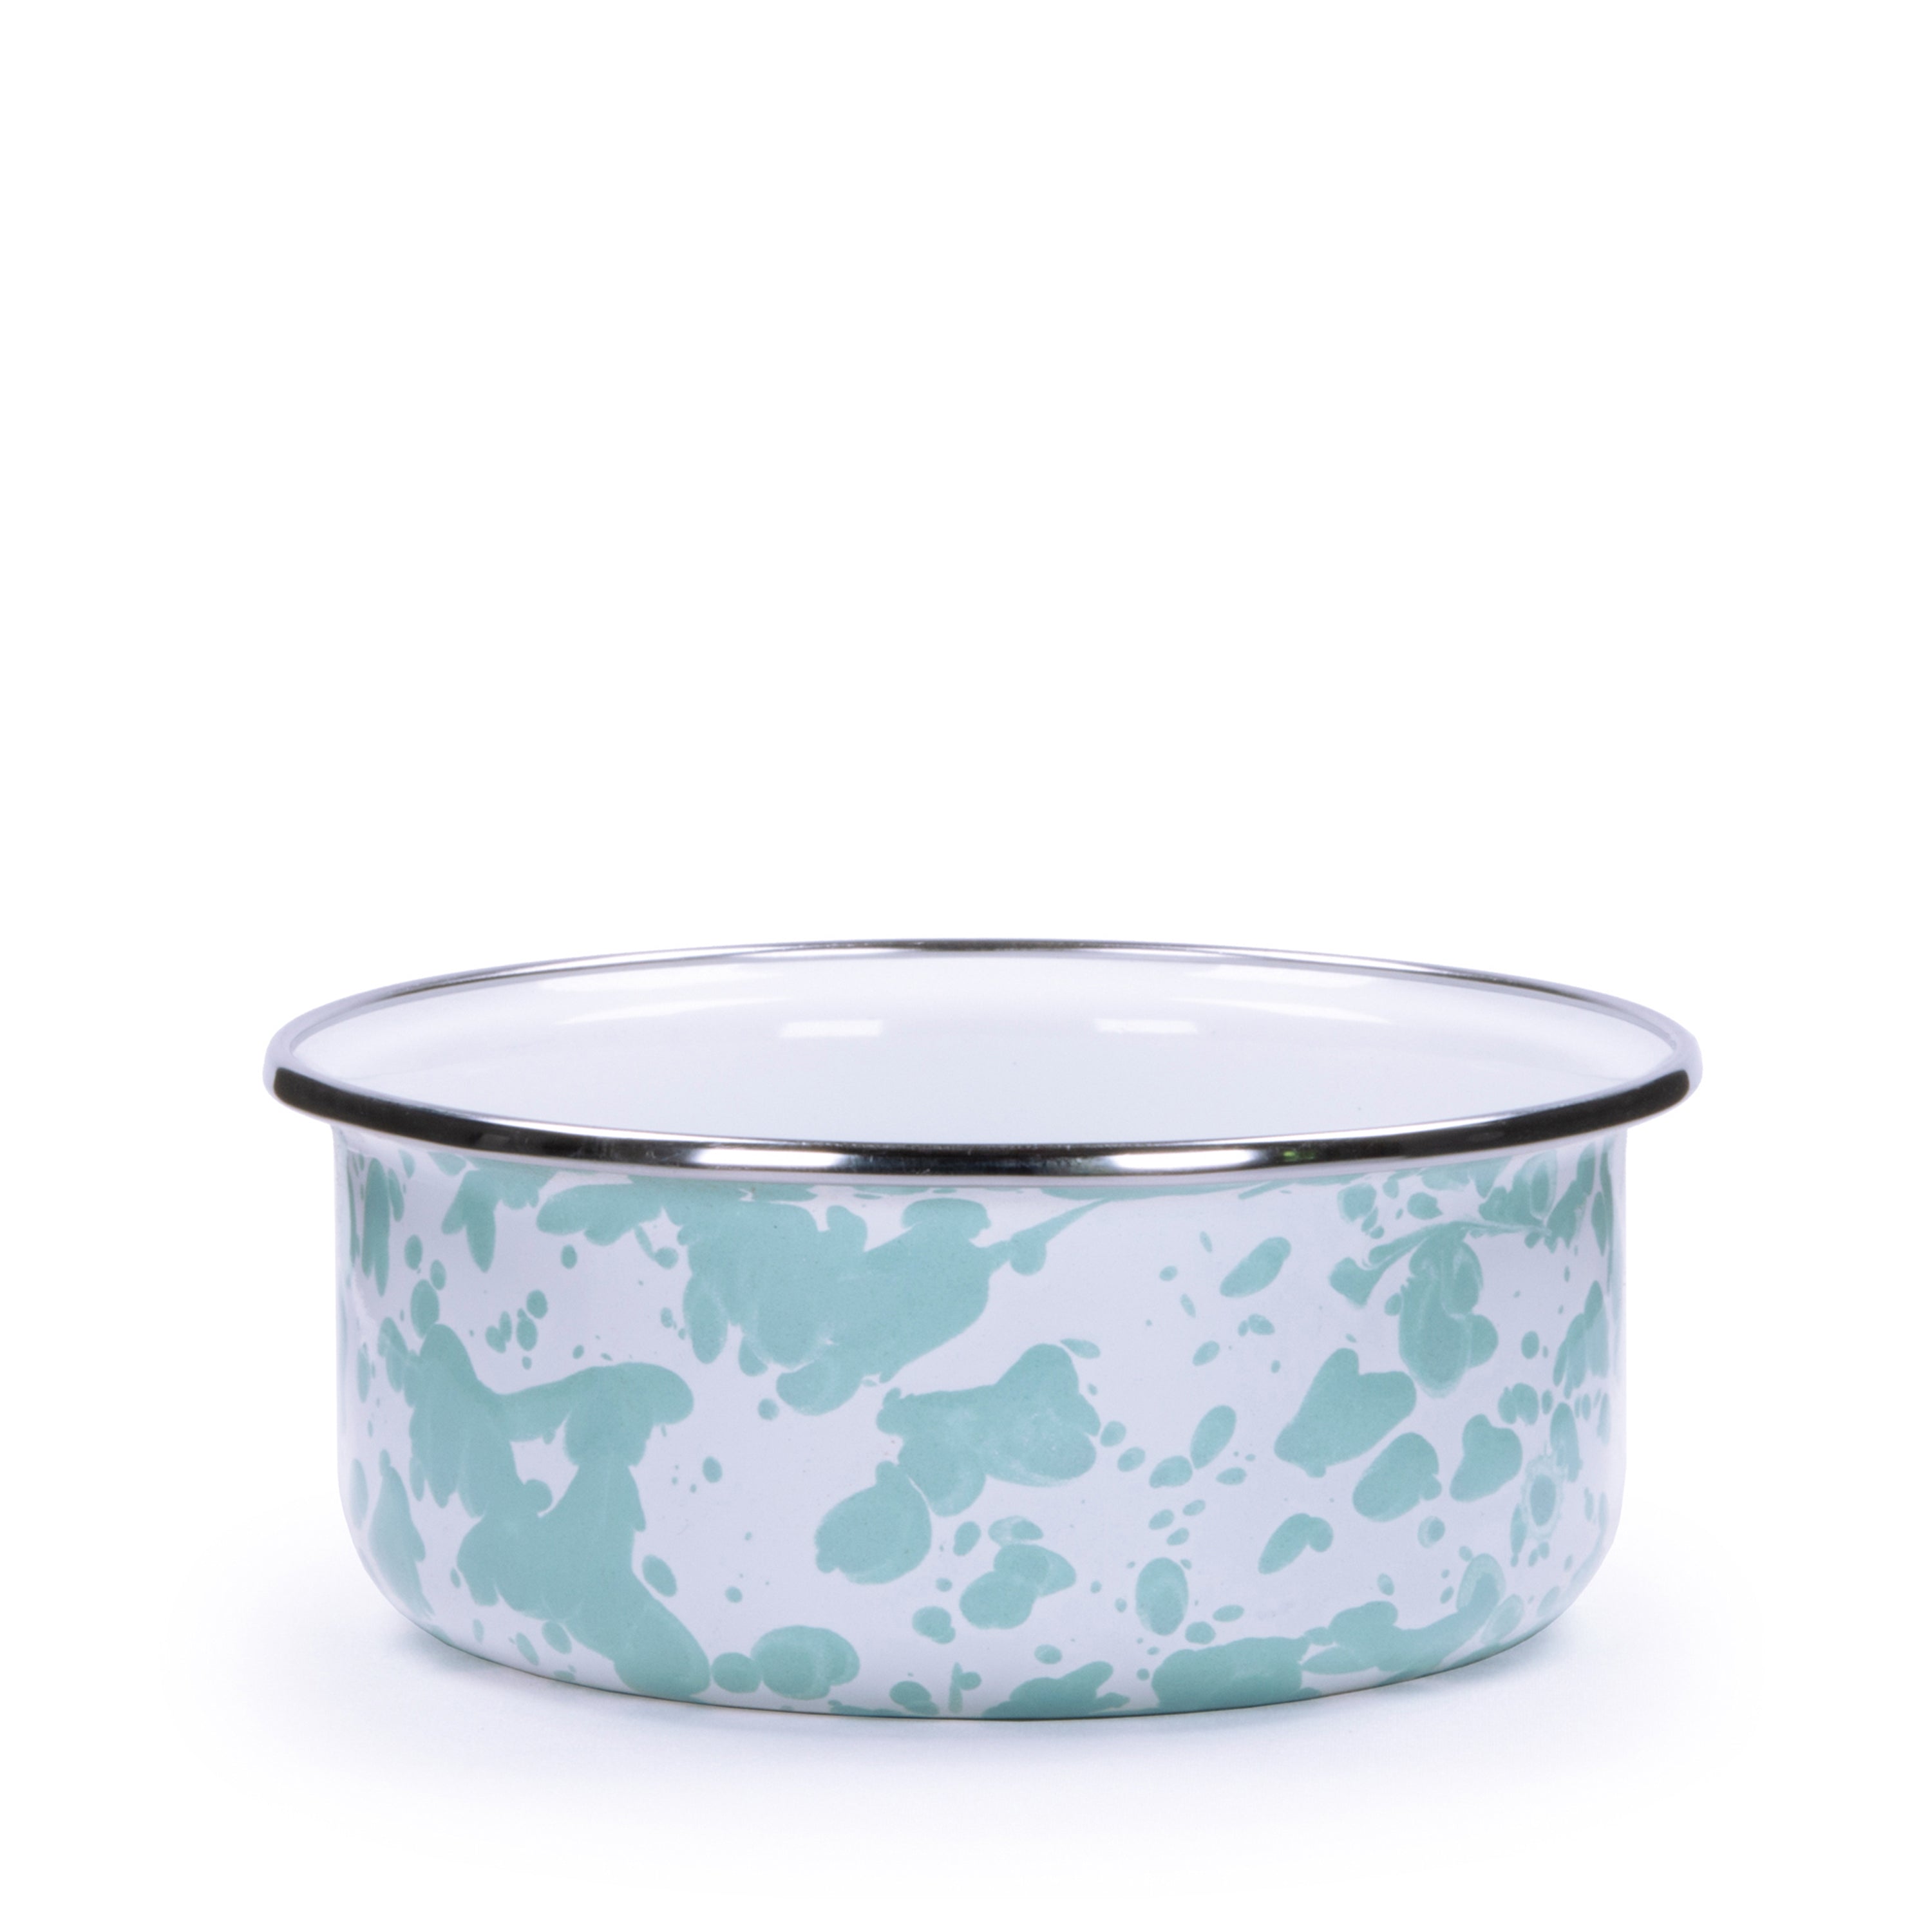 GL30 - Nesting Bowls - Sea Glass Design - UPC 619199300459 – Golden Rabbit  Enamelware